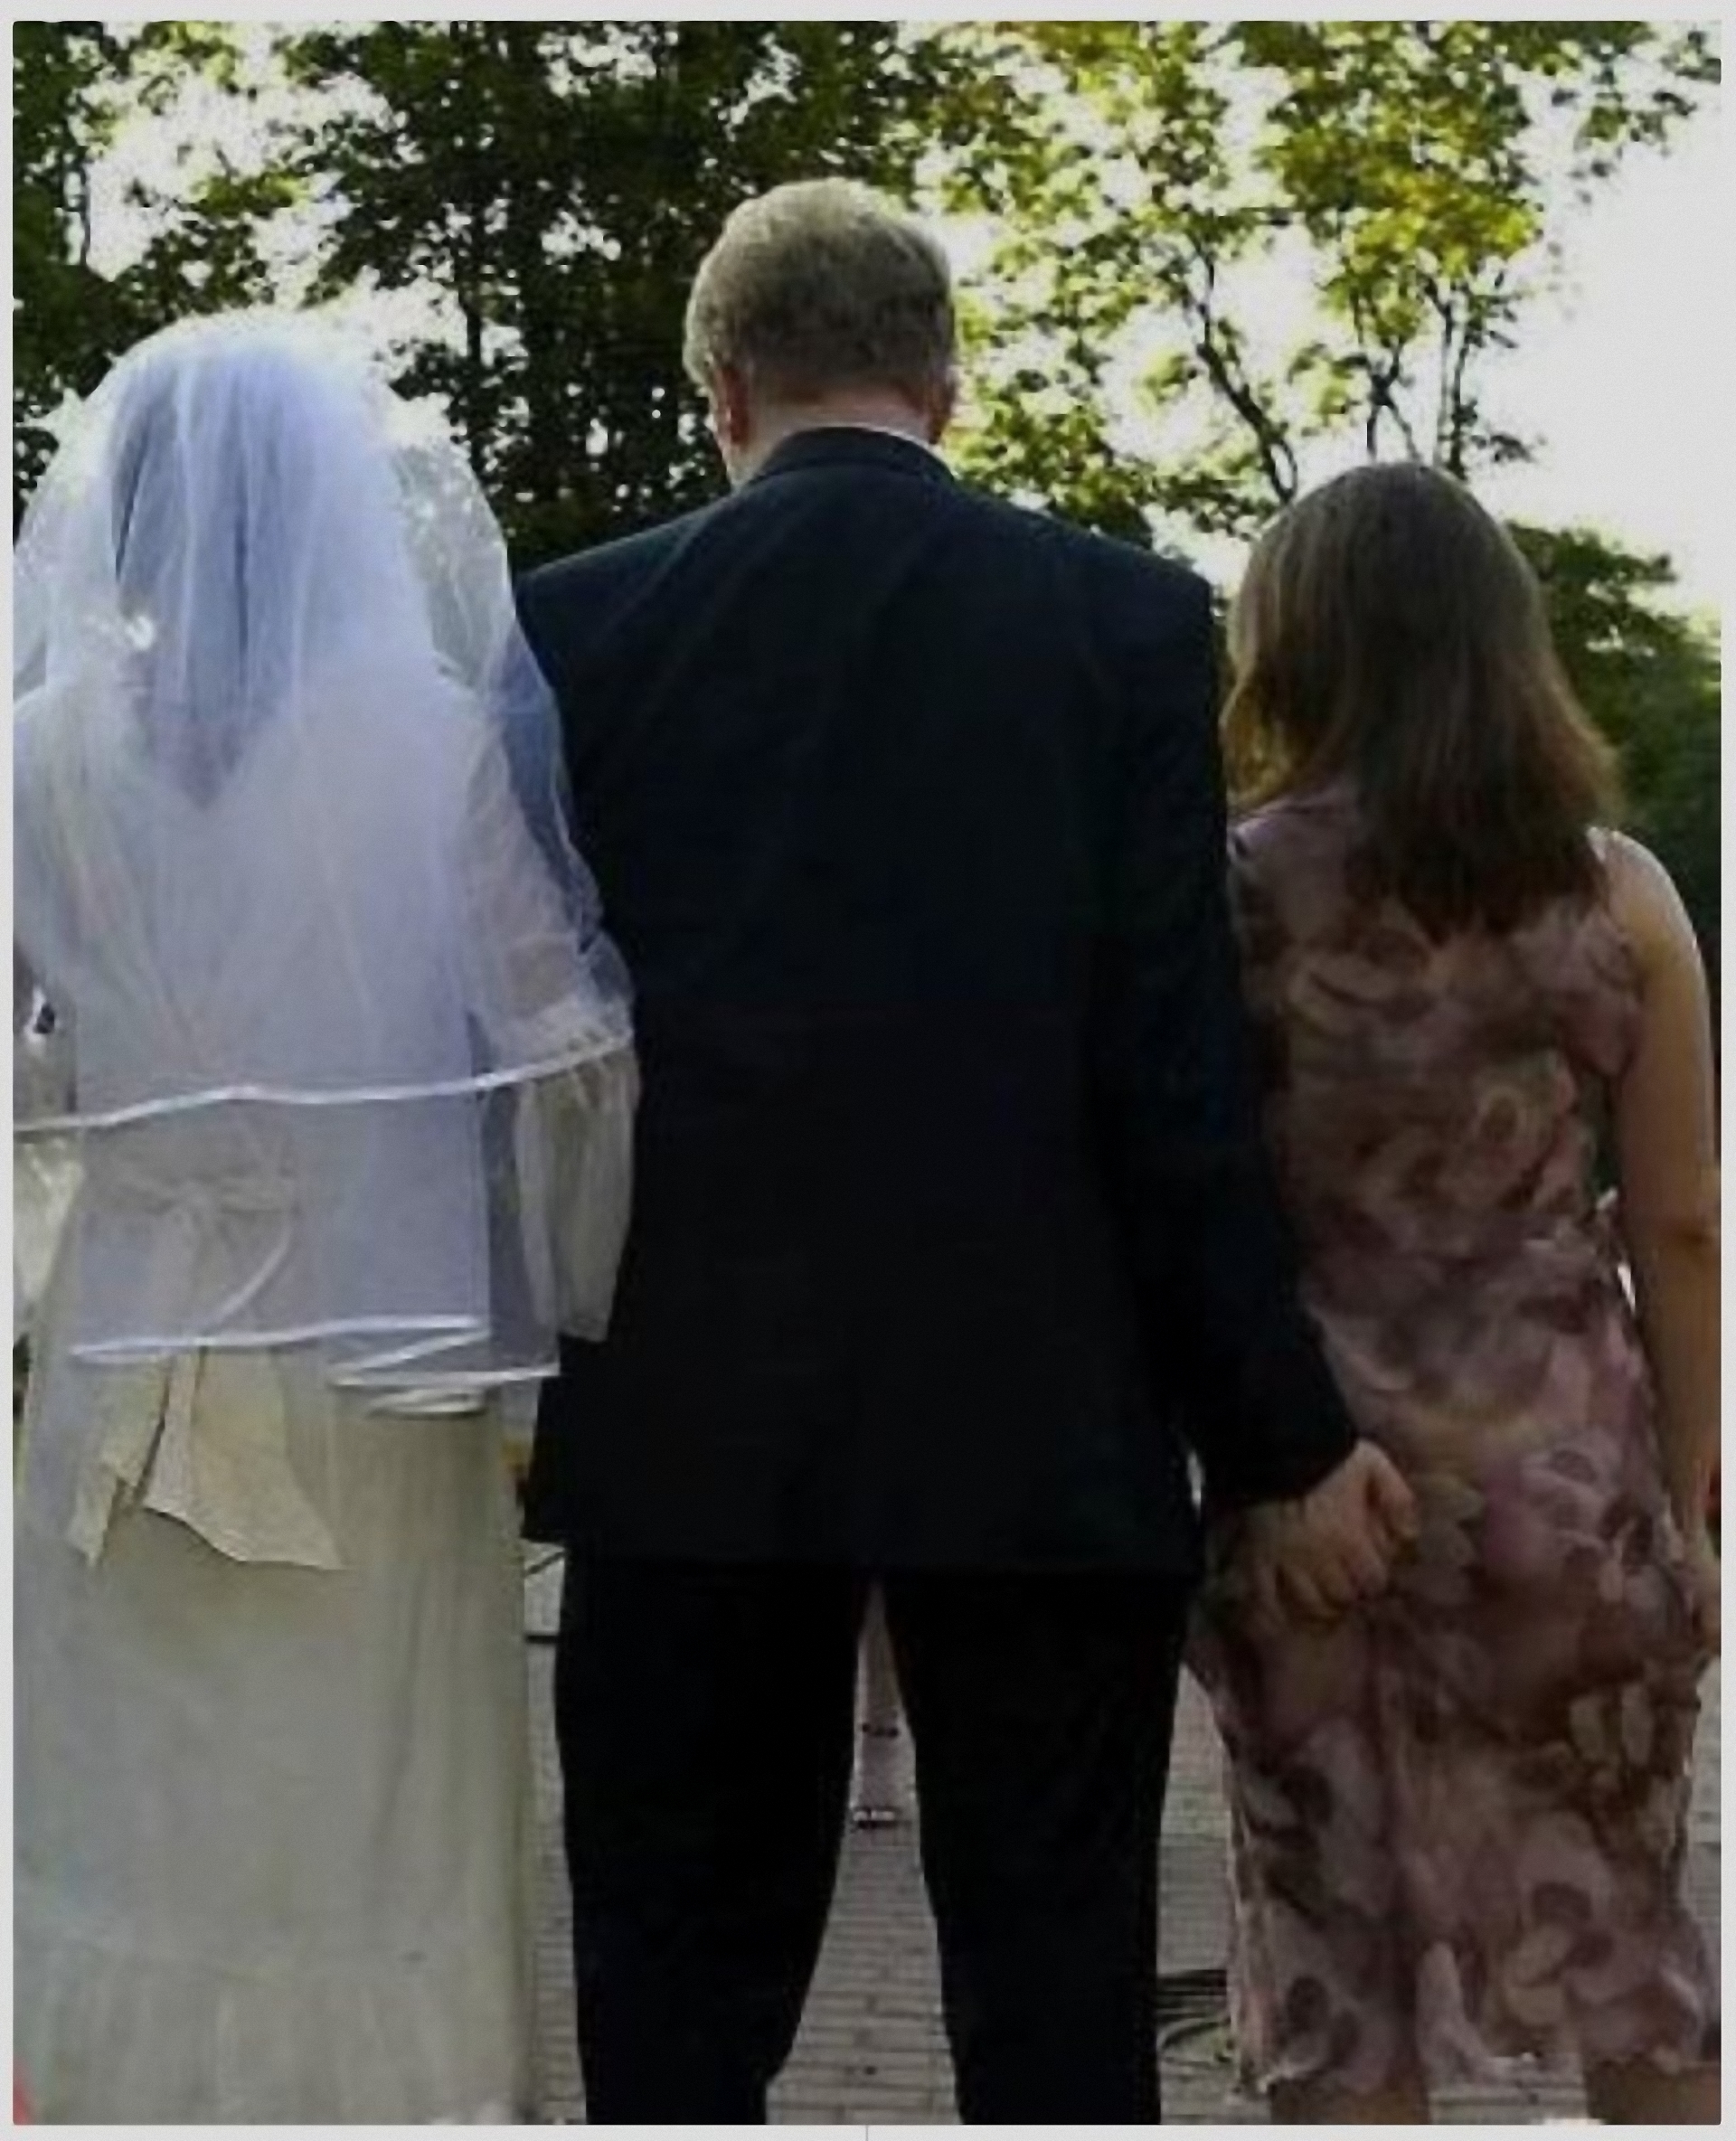 Невеста изменяет. Измена невесты в день свадьбы. Невеста изменяет со свидетелем. Невеста изменила жениху. Измена невесты на свадьбе